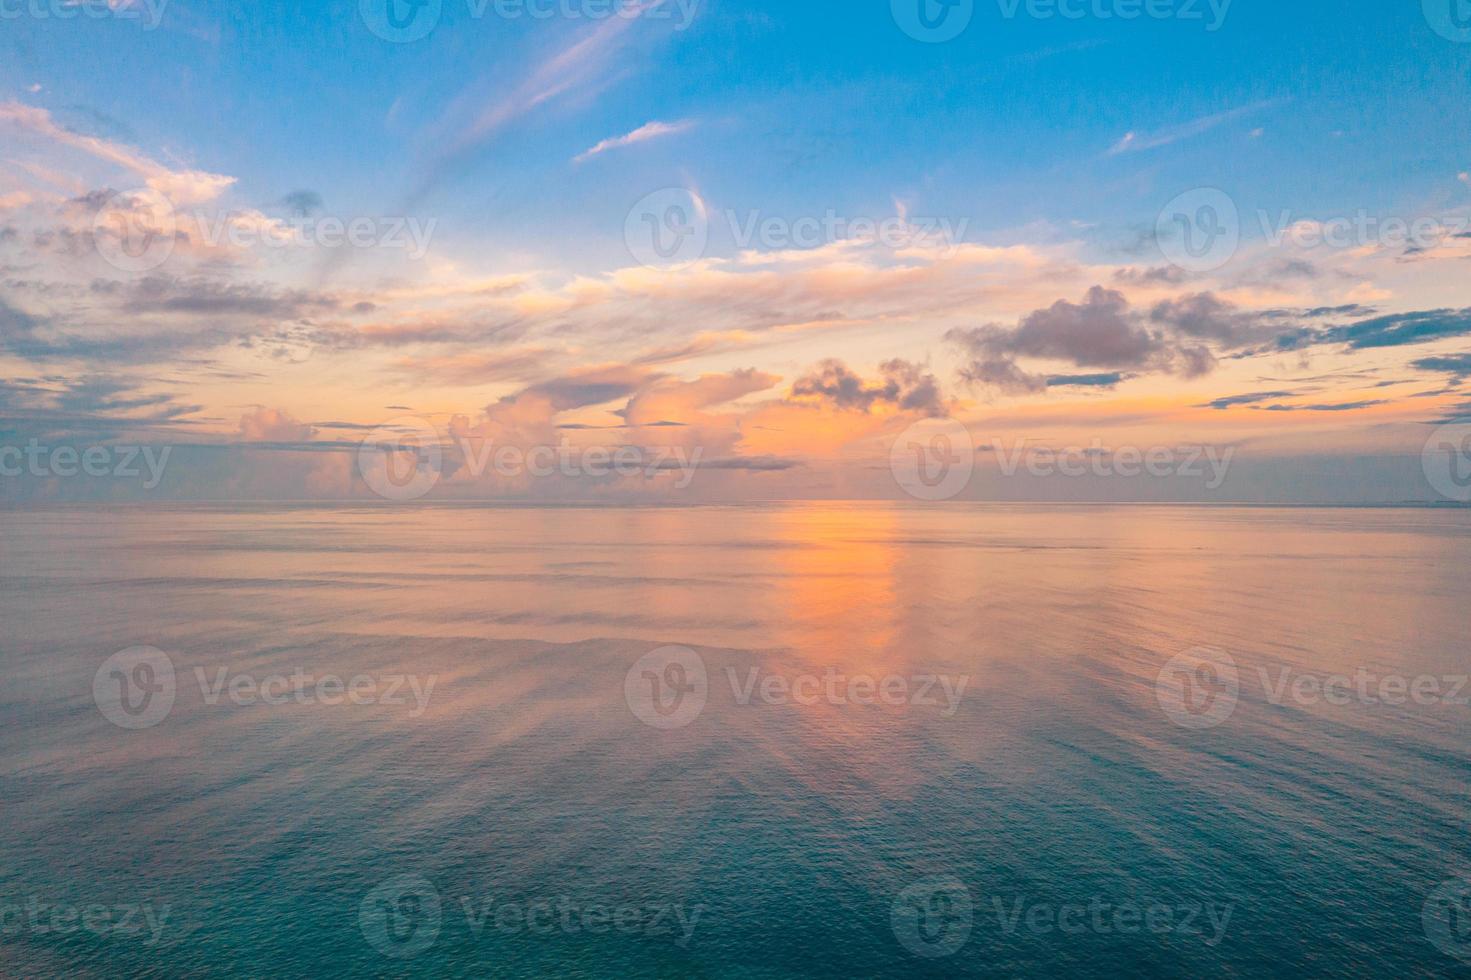 luftpanoramablick auf den sonnenuntergang über dem ozean. bunter Himmel, Wolken und Wasser. schöne ruhige szene, entspannender ozeanhorizont foto